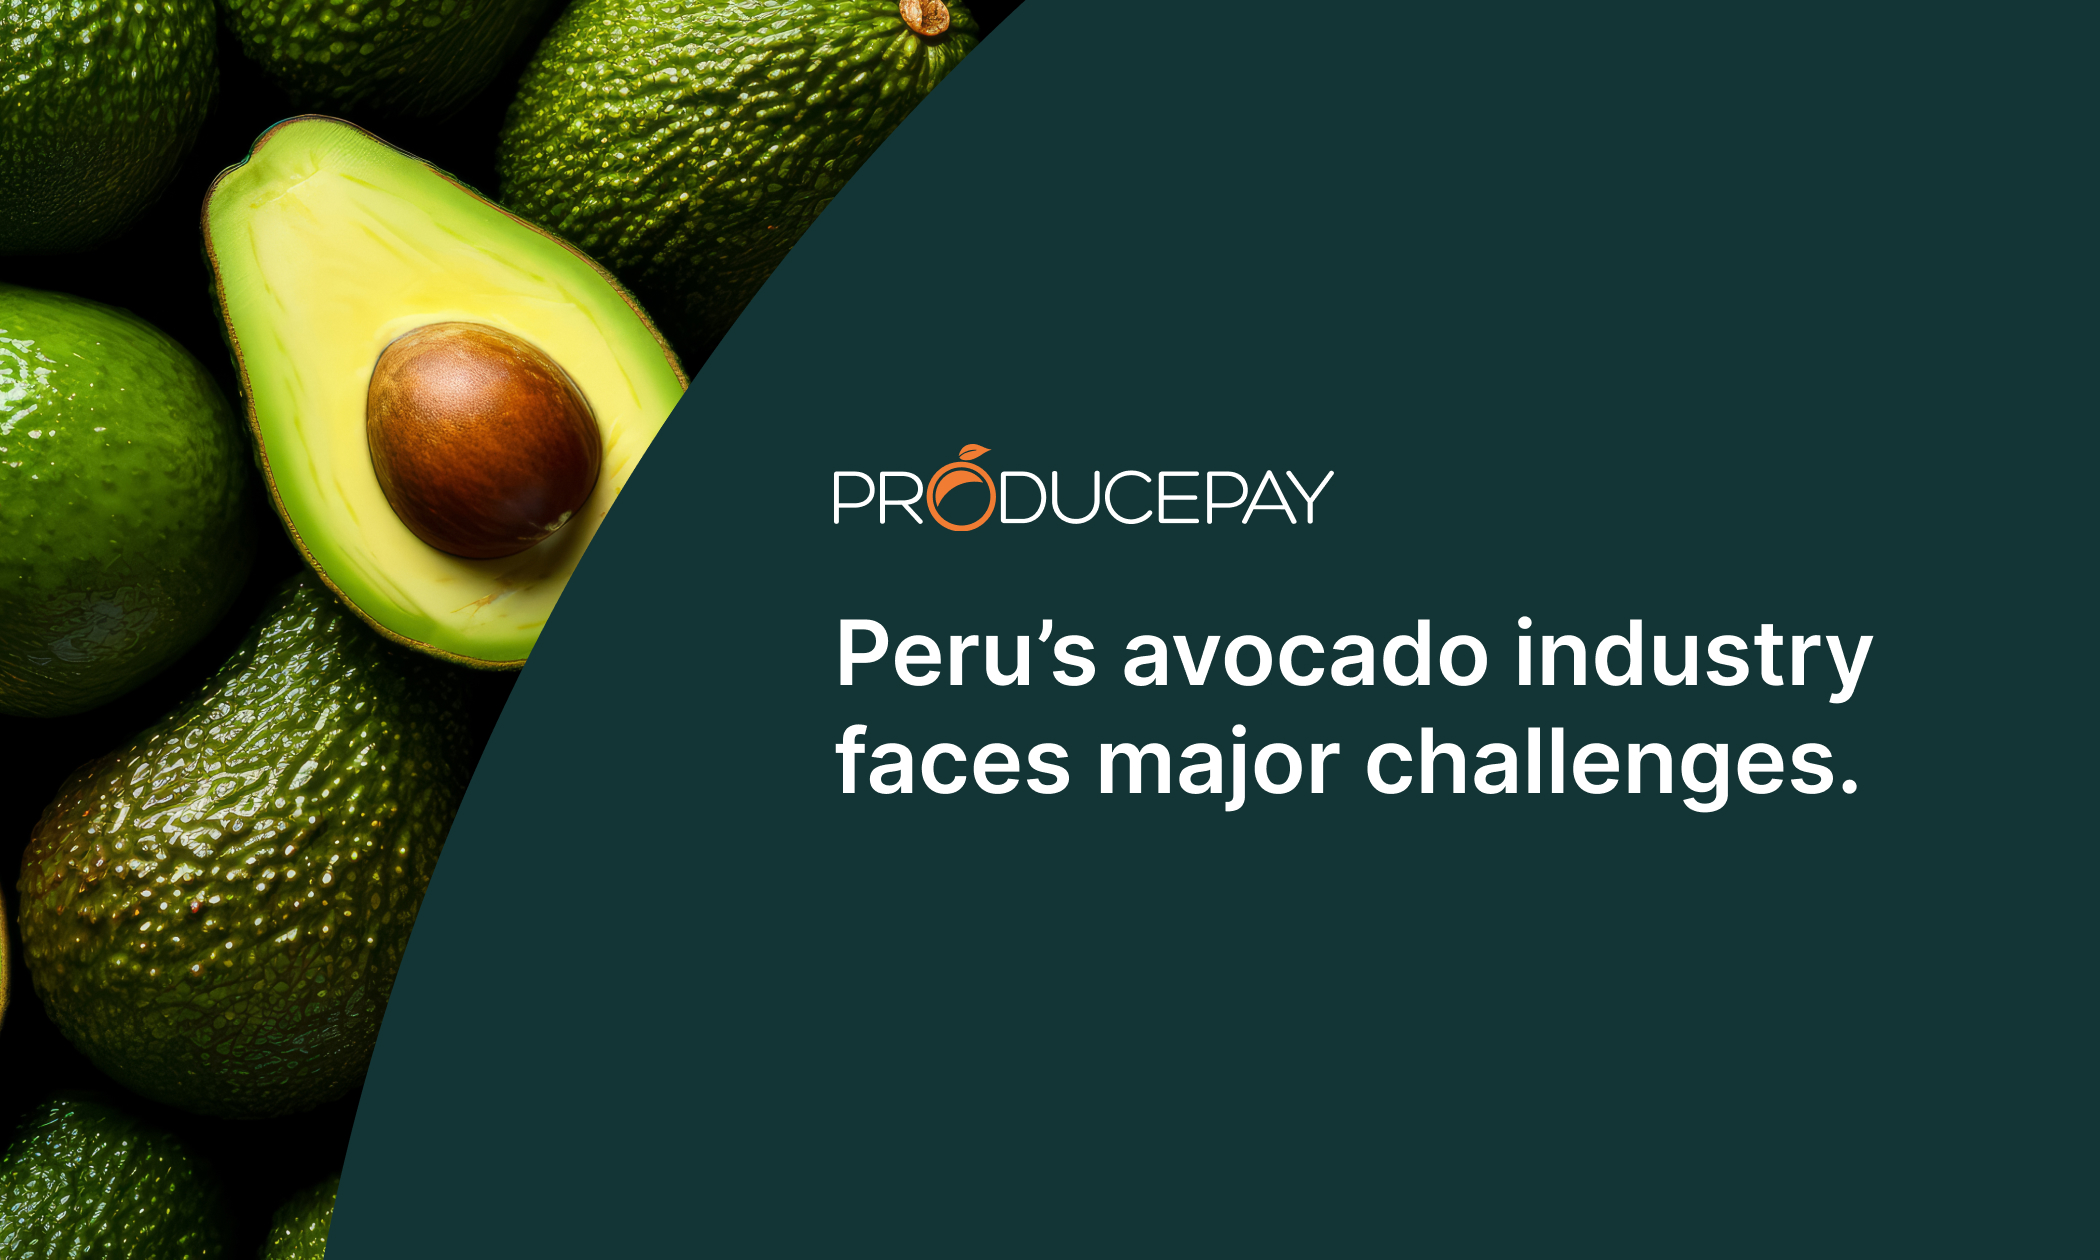 Peru’s avocado industry faces major challenges